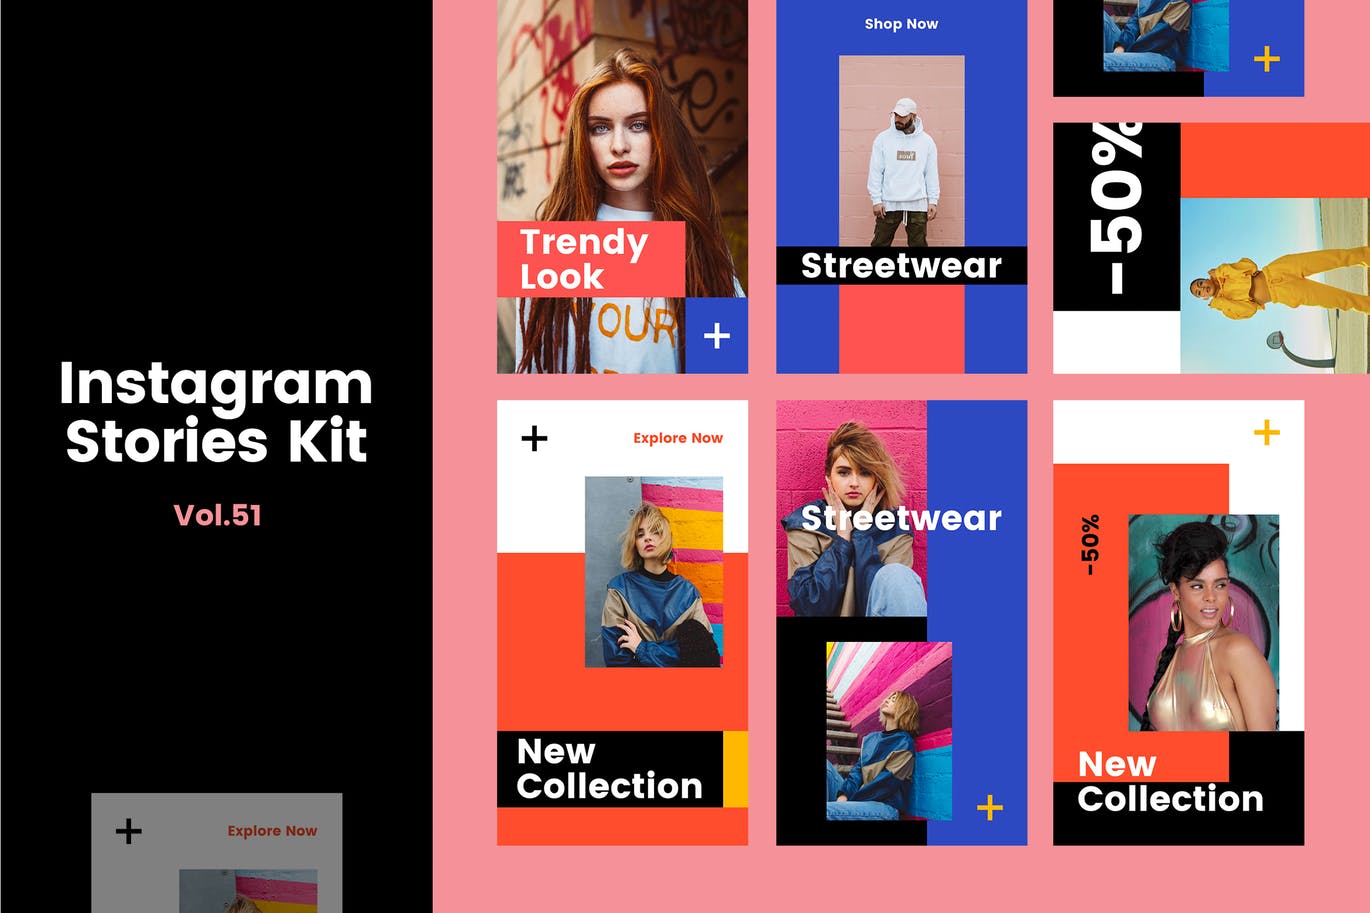 奢侈品牌Instagram社交平台品牌故事设计素材包v51 Instagram Stories Kit (Vol.51)插图